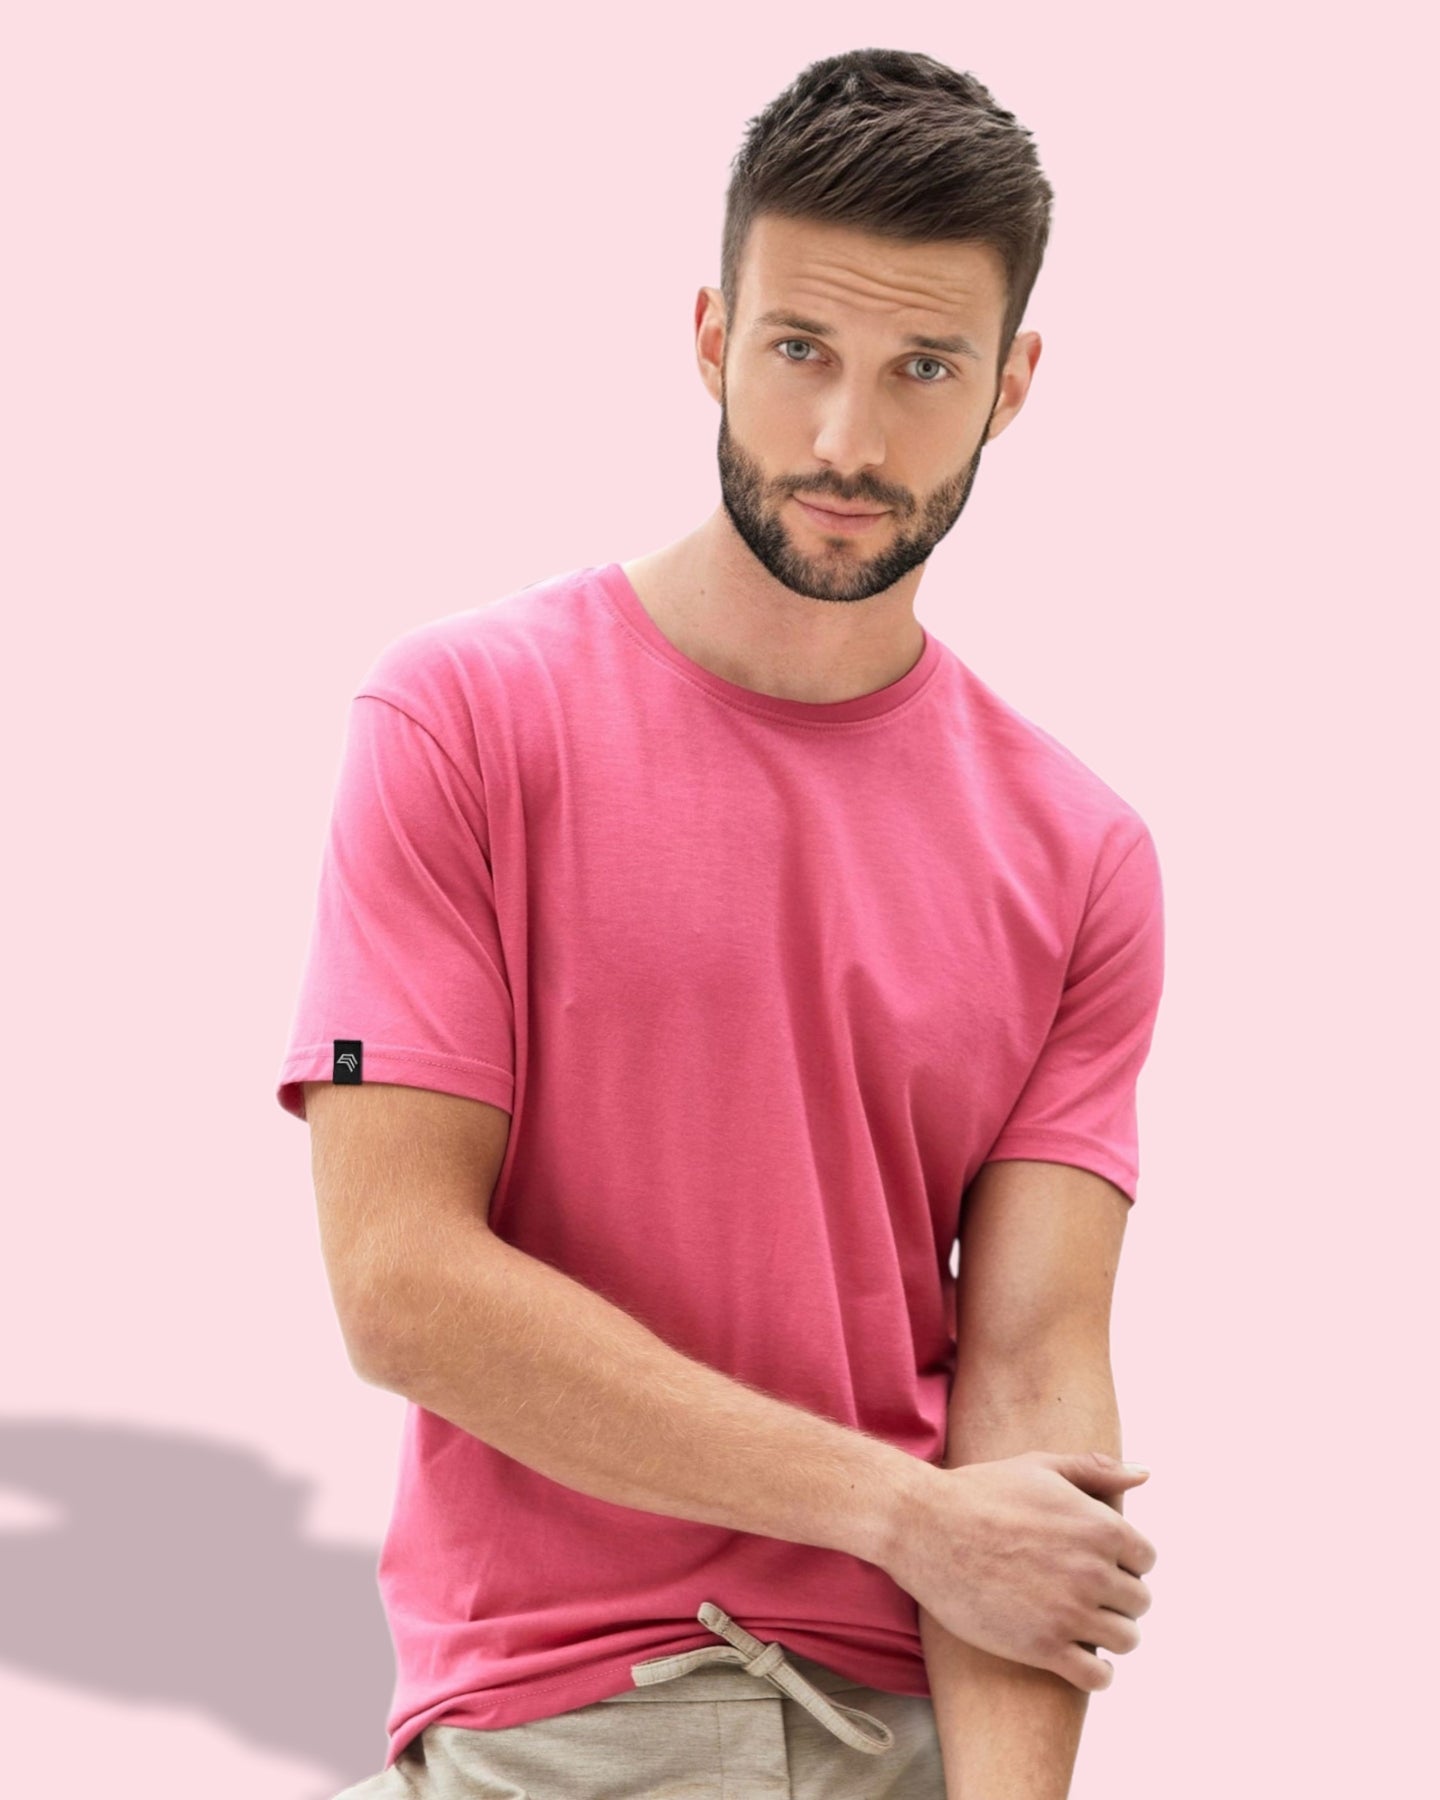 JAN 8008 ― Herren Bio-Baumwolle T-Shirt - Soft Pink